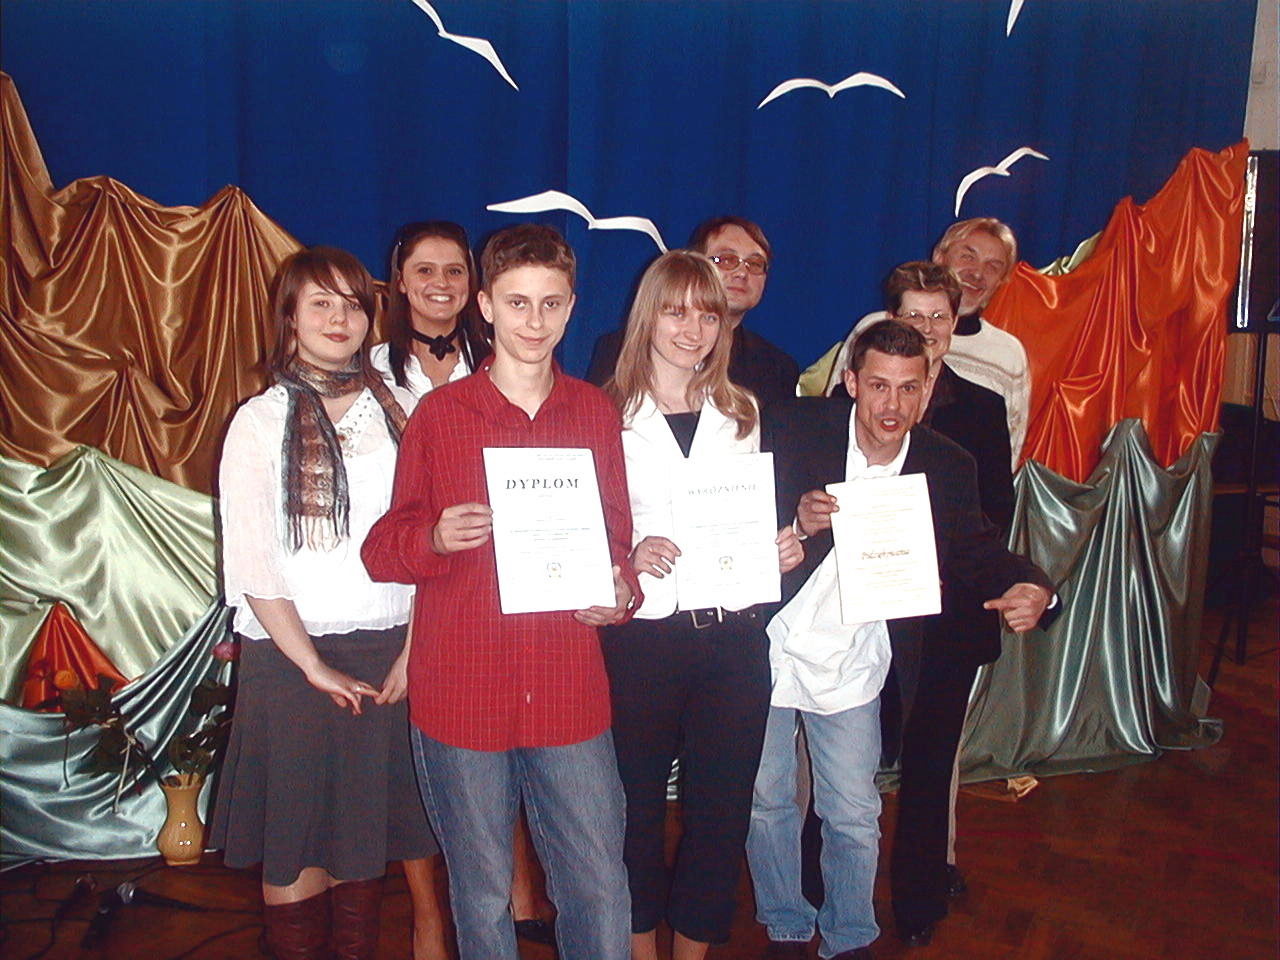  Foto: Gimnazjalisci recytowali wiersze ks. Jana Twardowskiego i Papieża